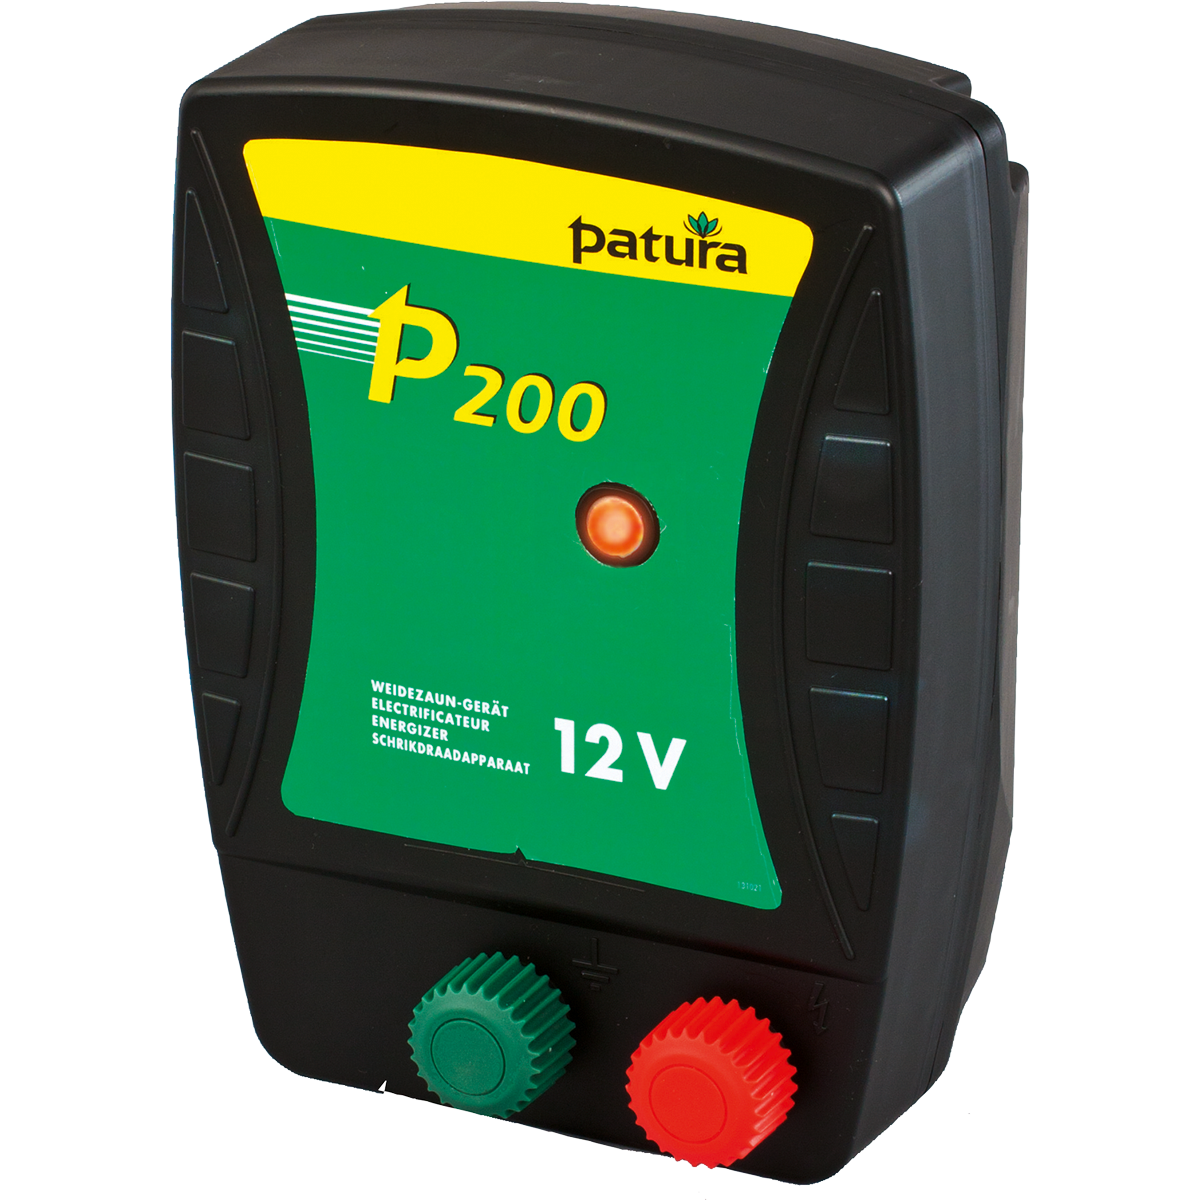 Patura p200, schrikdraadapparaat voor 12 v batterij met draagbox